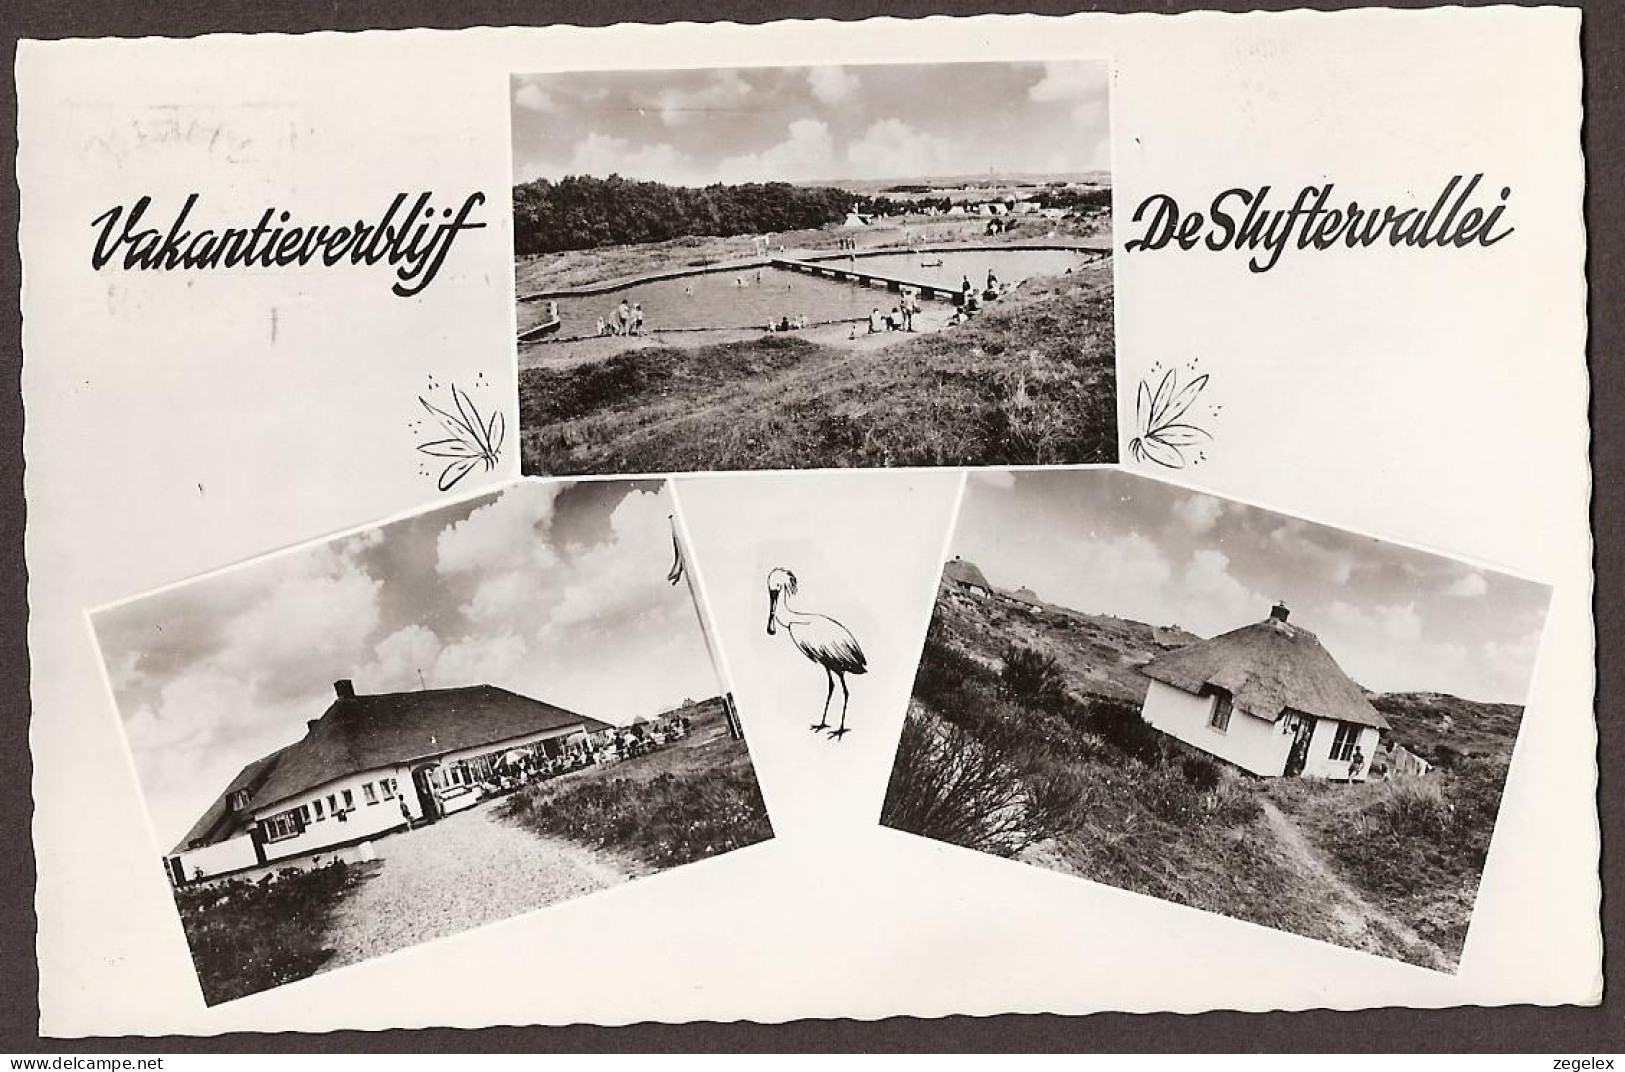 De Cocksdorp (Texel) - Vakantieverblijf "De Sluftervallei" - 1969 - Texel